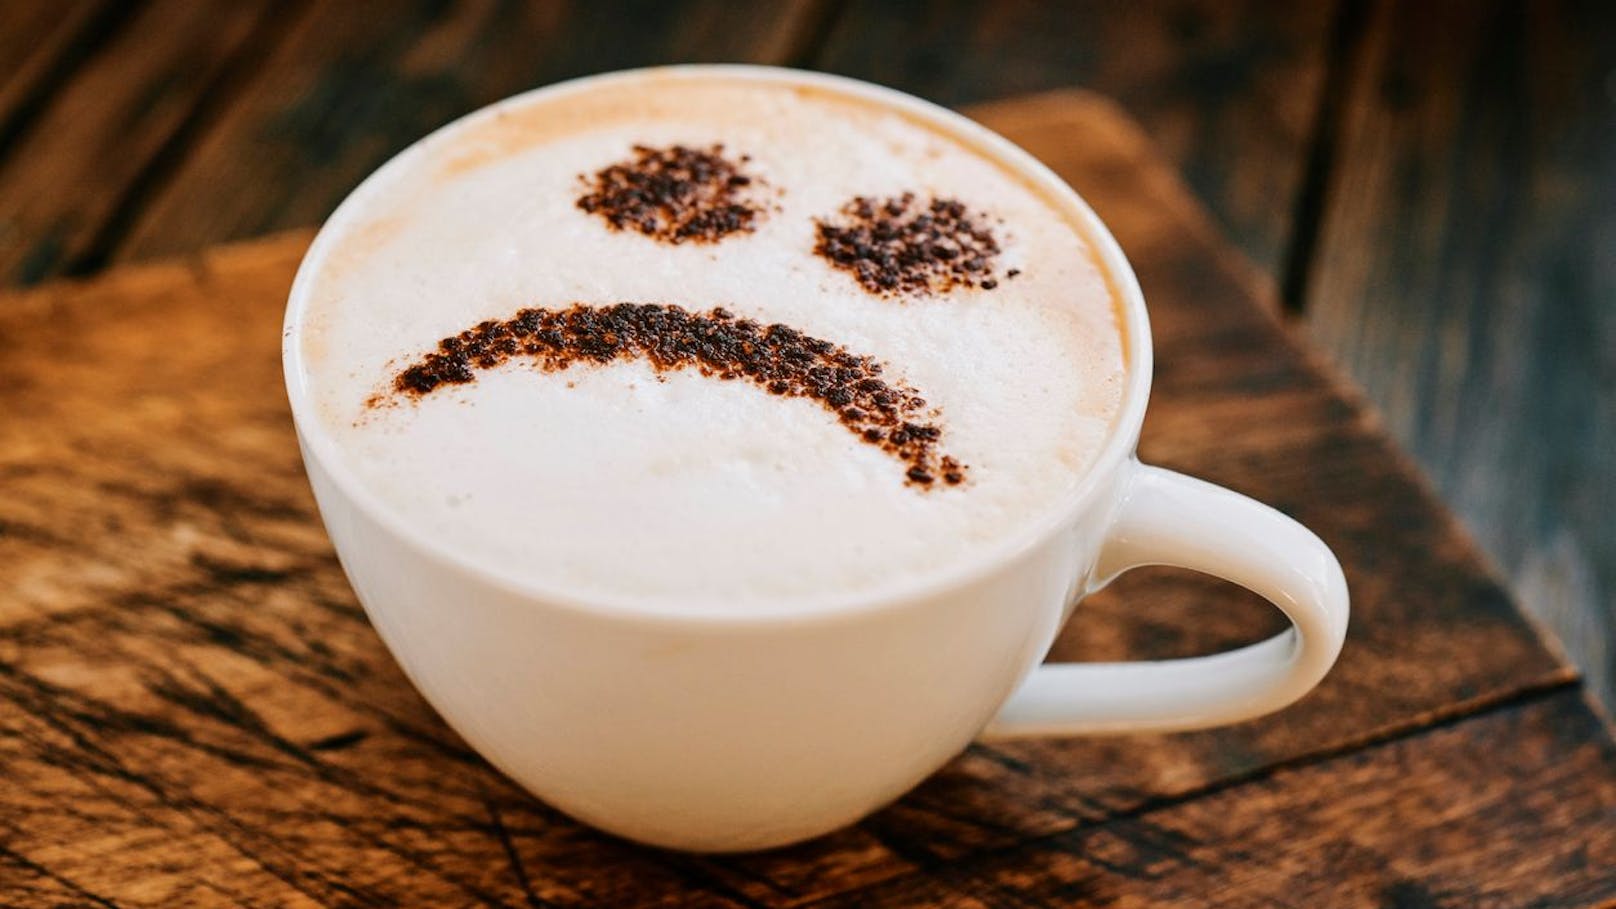 Schlechte Nachricht für alle Kaffee-Fans: der beliebte Wachmacher wird teurer.